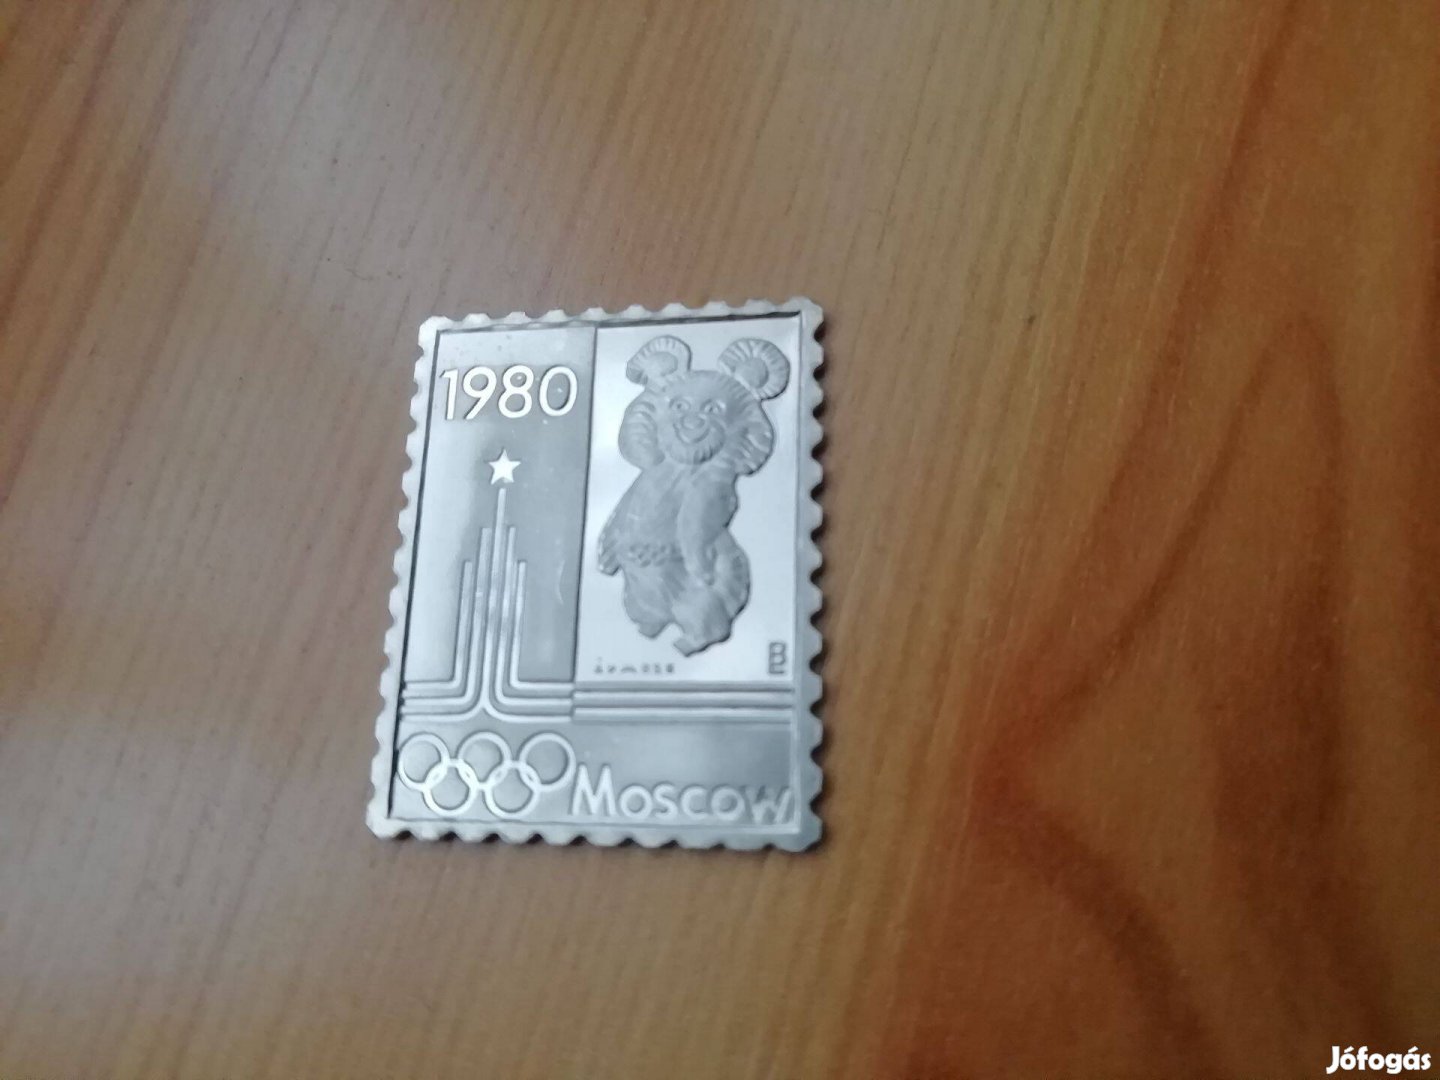 Moszkvai Olimpia 1980-as jelzet ezüst bélyeg különlegeség